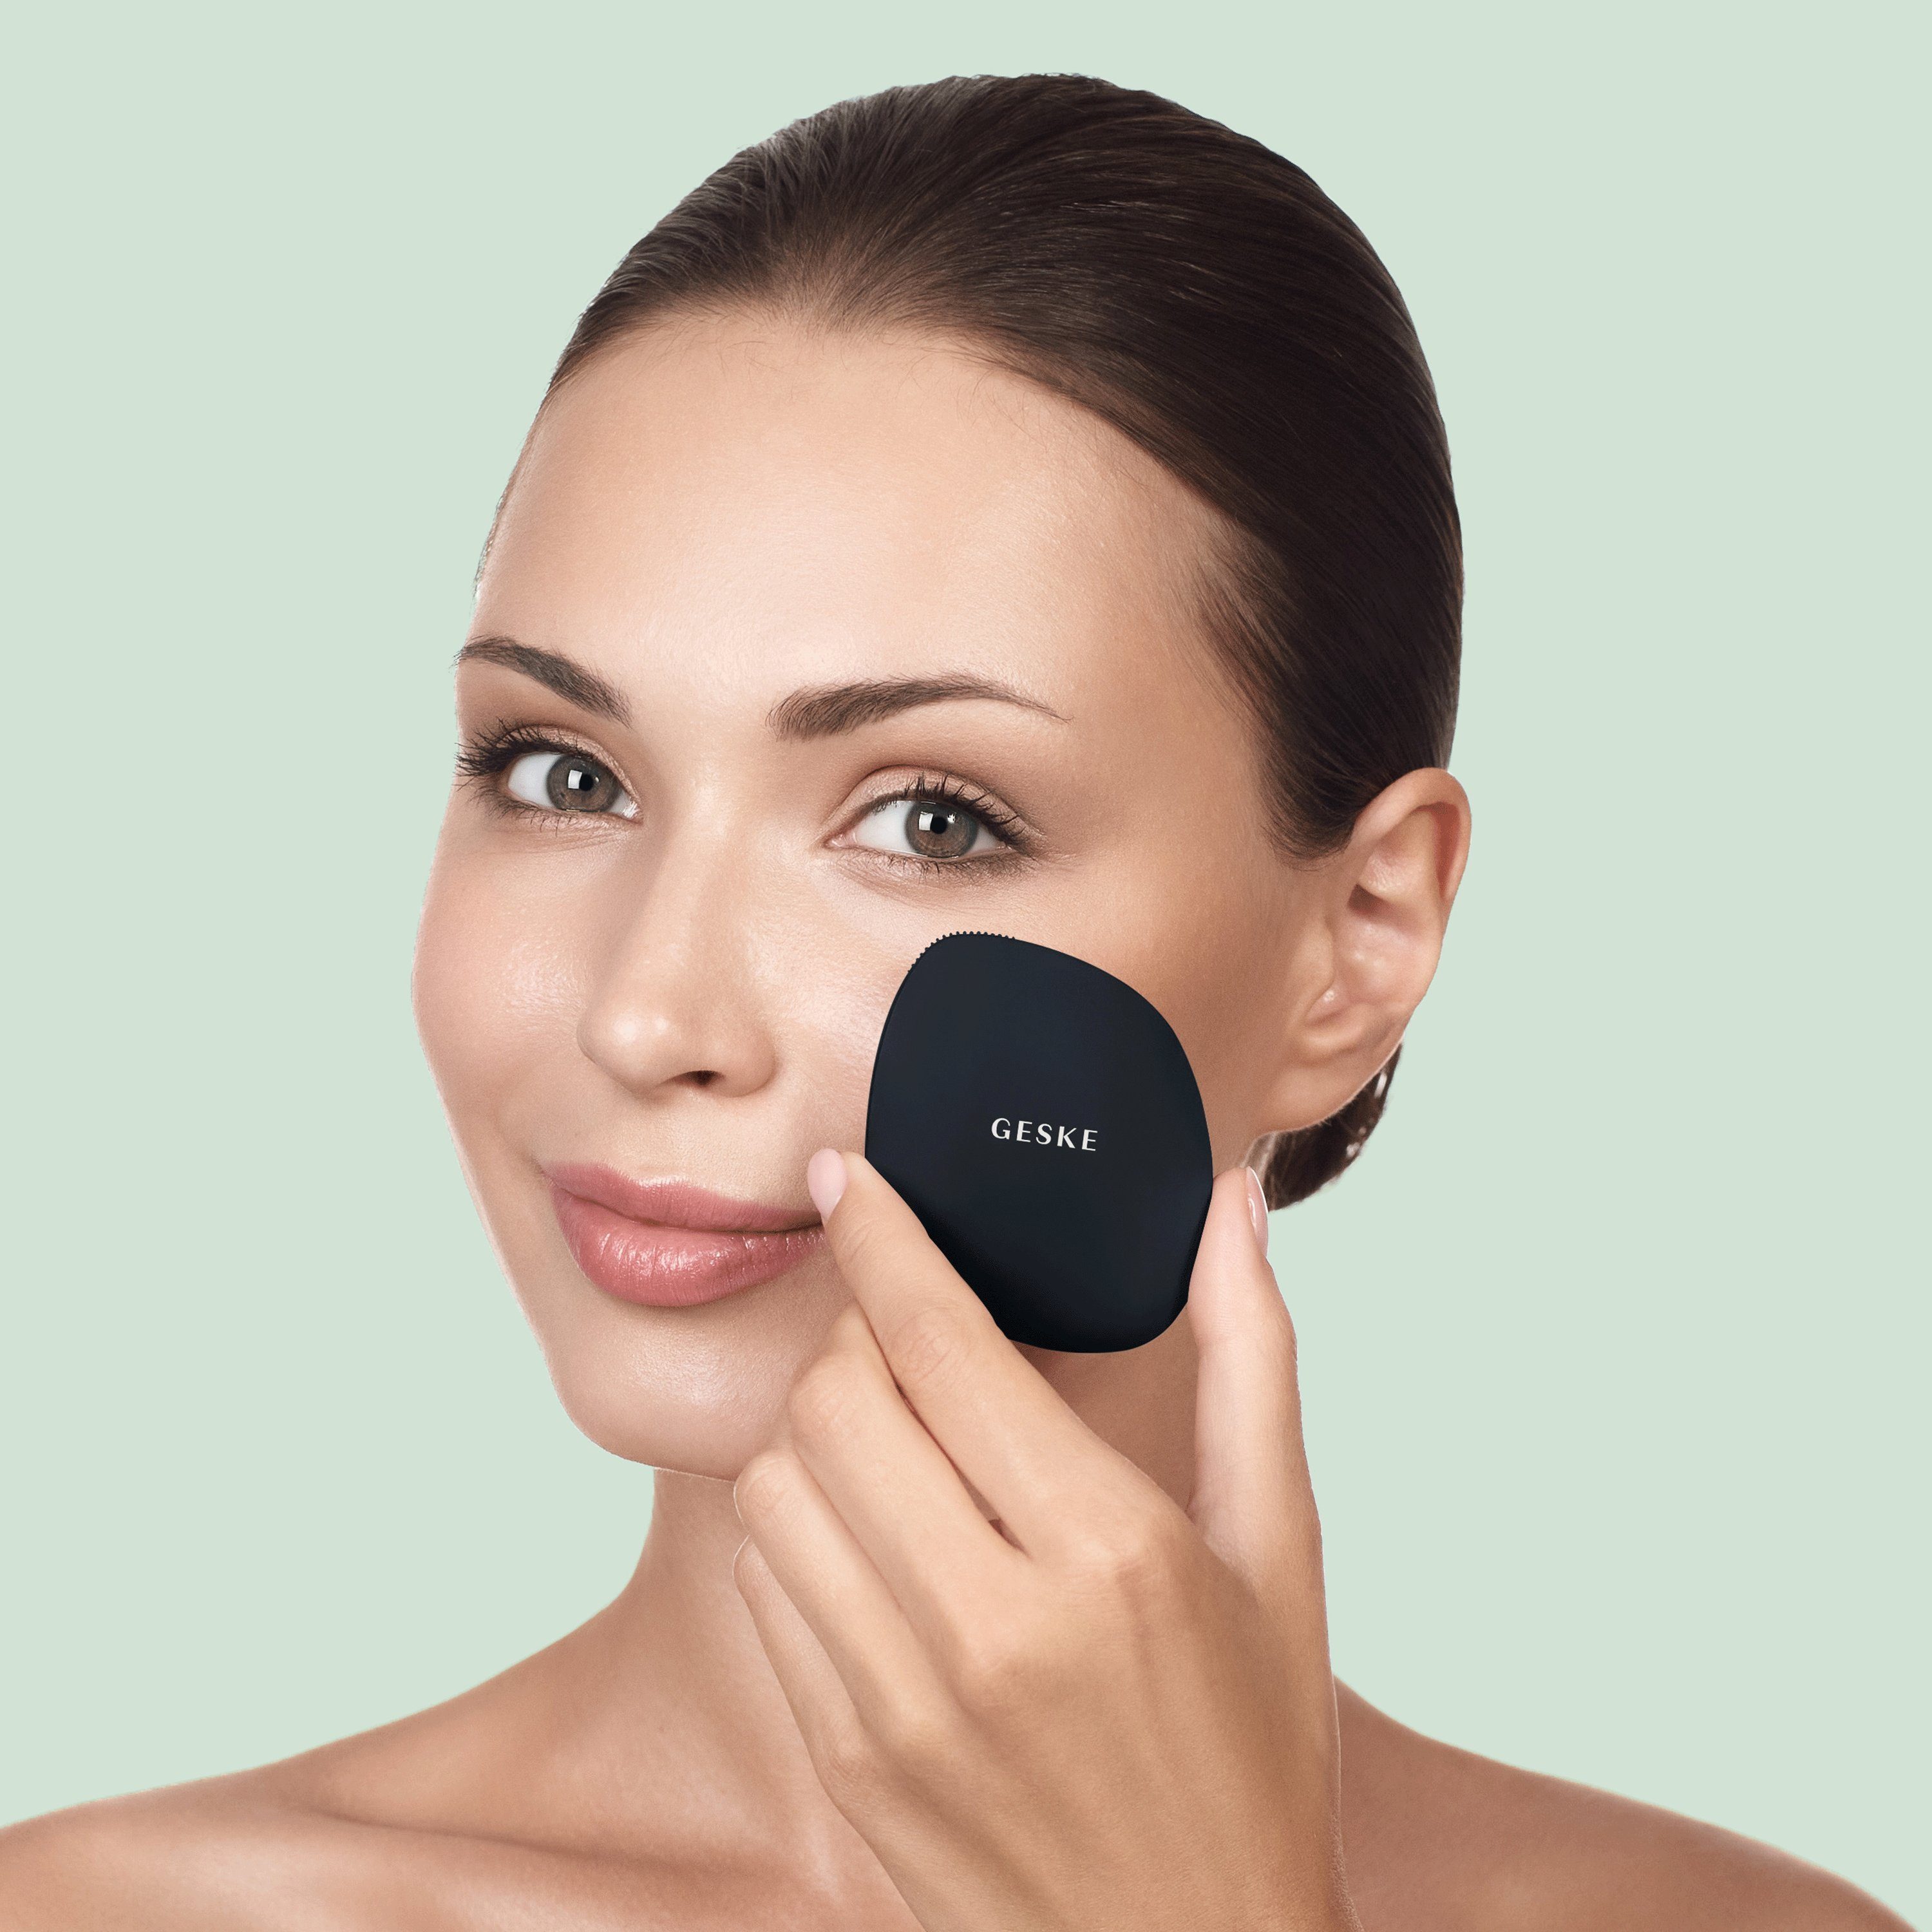 GESKE German Beauty Tech kostenloser 4 Facial inkl. App GESKE Black erhältst 1-tlg., Hautpflegeroutine. (SmartAppGuided Packung, Mit Du Device), APP deine in personalisierte der Gesichtsreinigungsbürste Elektrische SmartAppGuided™ 1, Brush